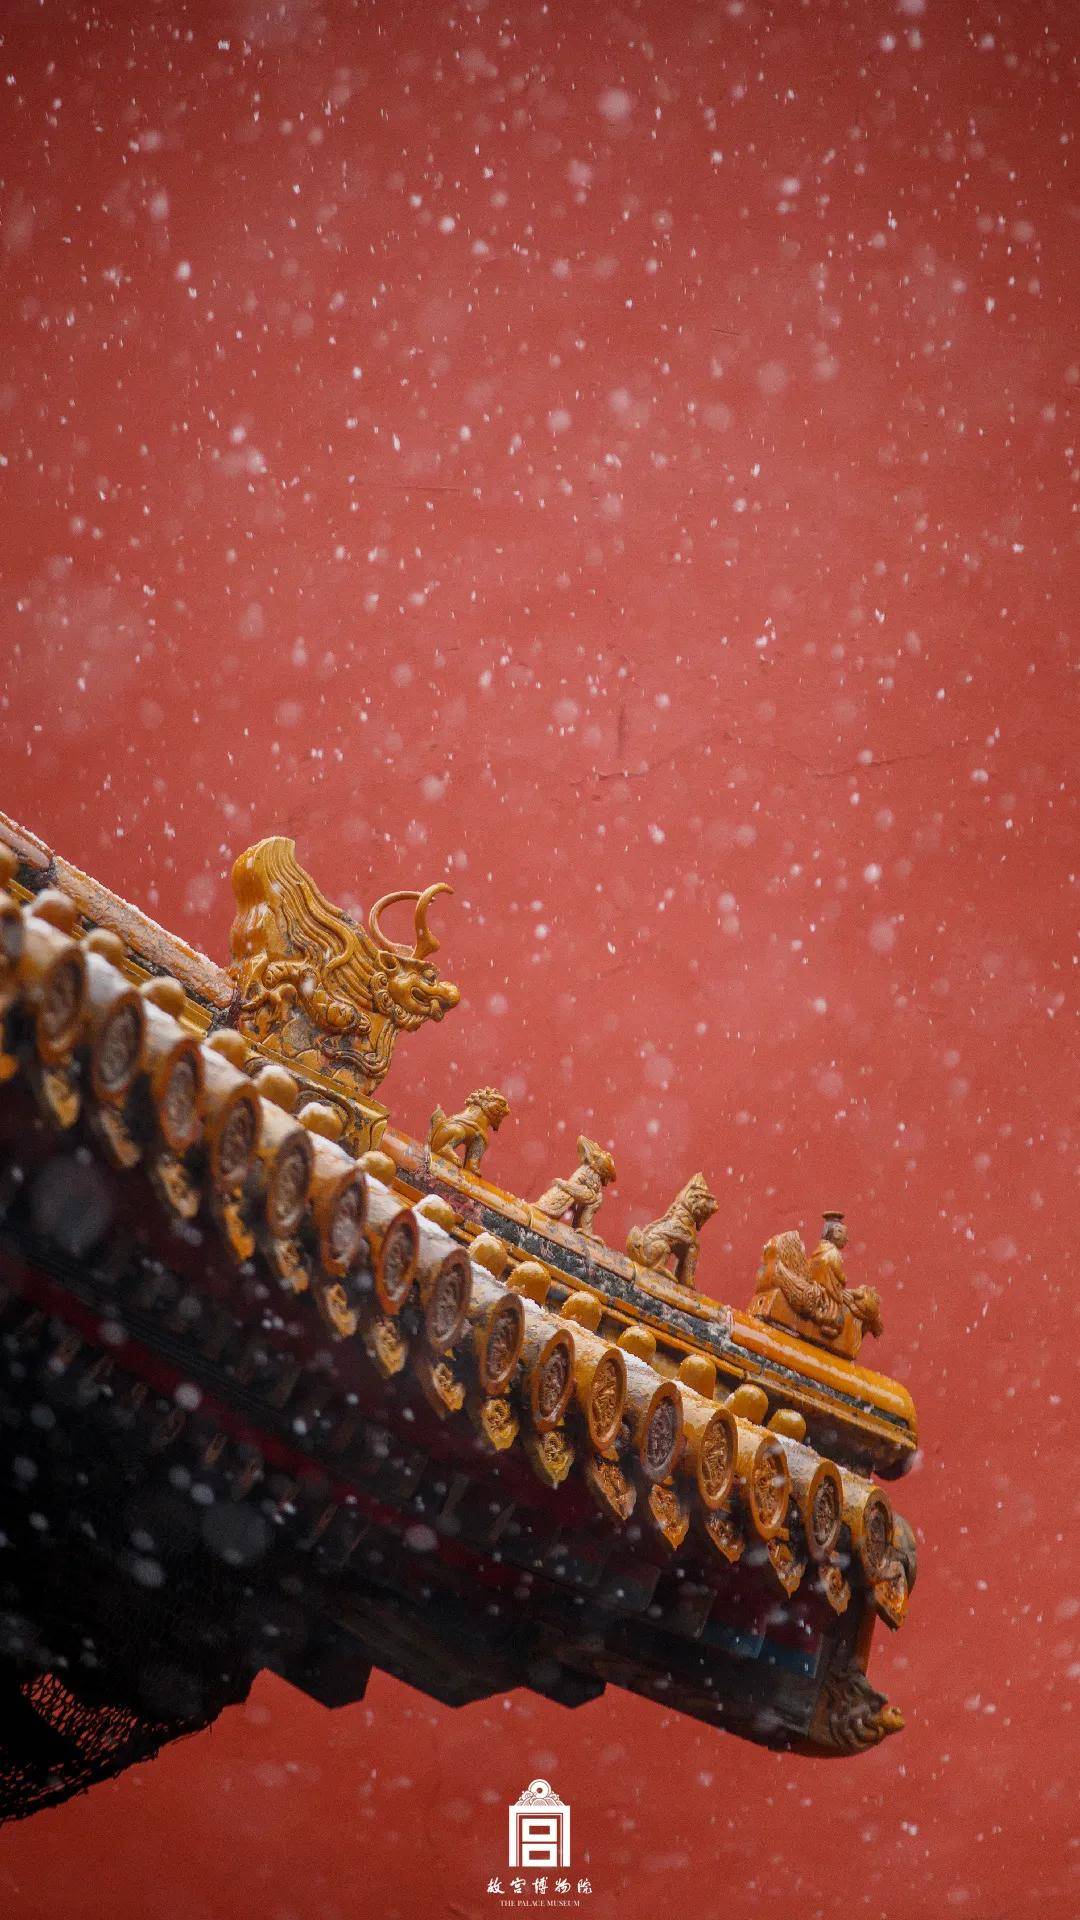 瑞雪启祥600年的紫禁城初雪如约而至